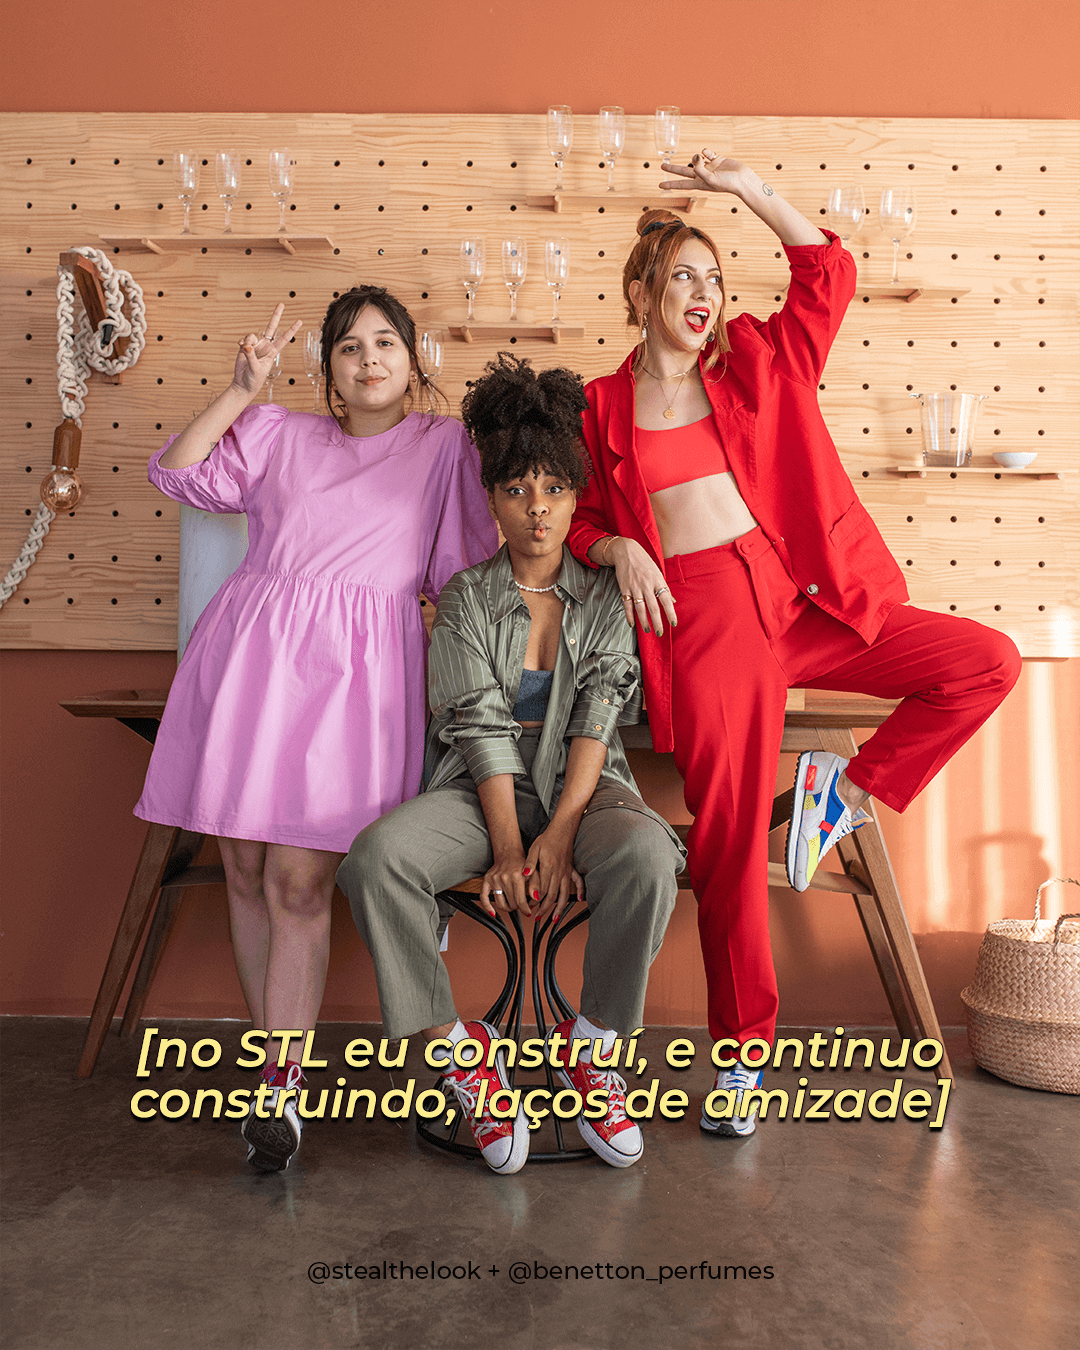 Isadora, Claudiana e Aline - perfume - amizade no trabalho - inverno - brasil - https://stealthelook.com.br